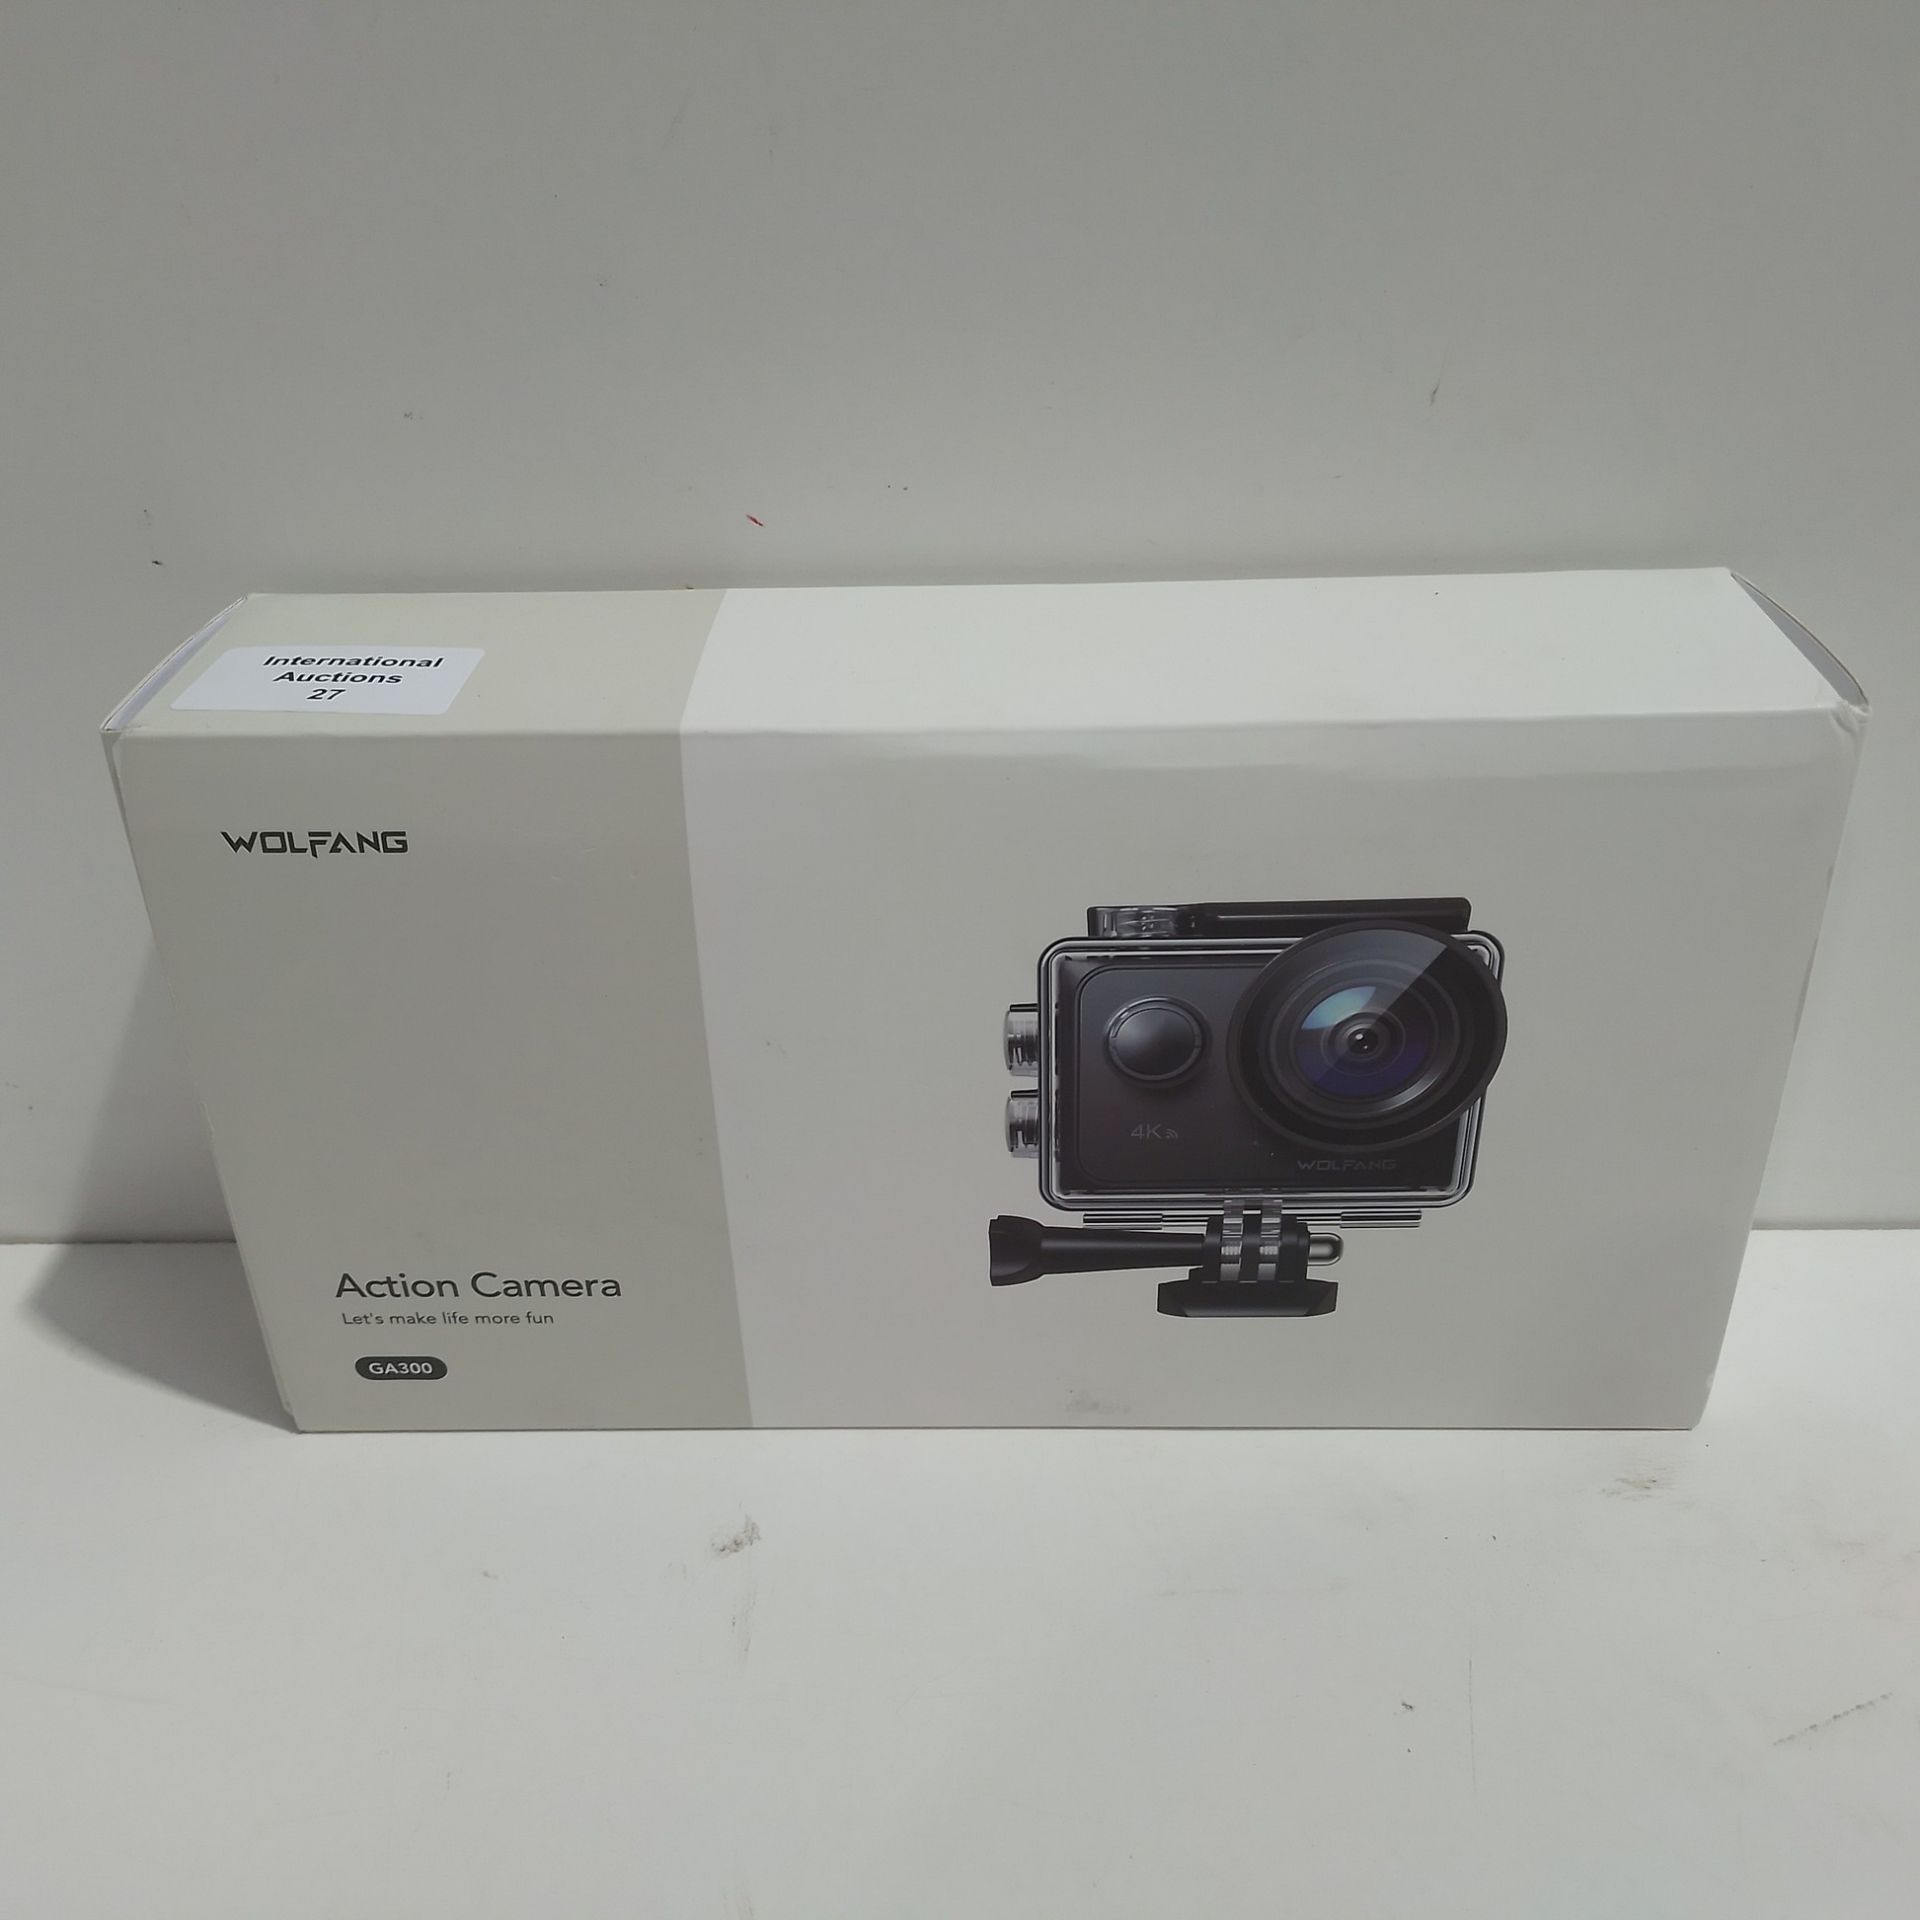 RRP £97.11 WOLFANG Action Camera 4K 60FPS 24MP GA300 - Image 2 of 2